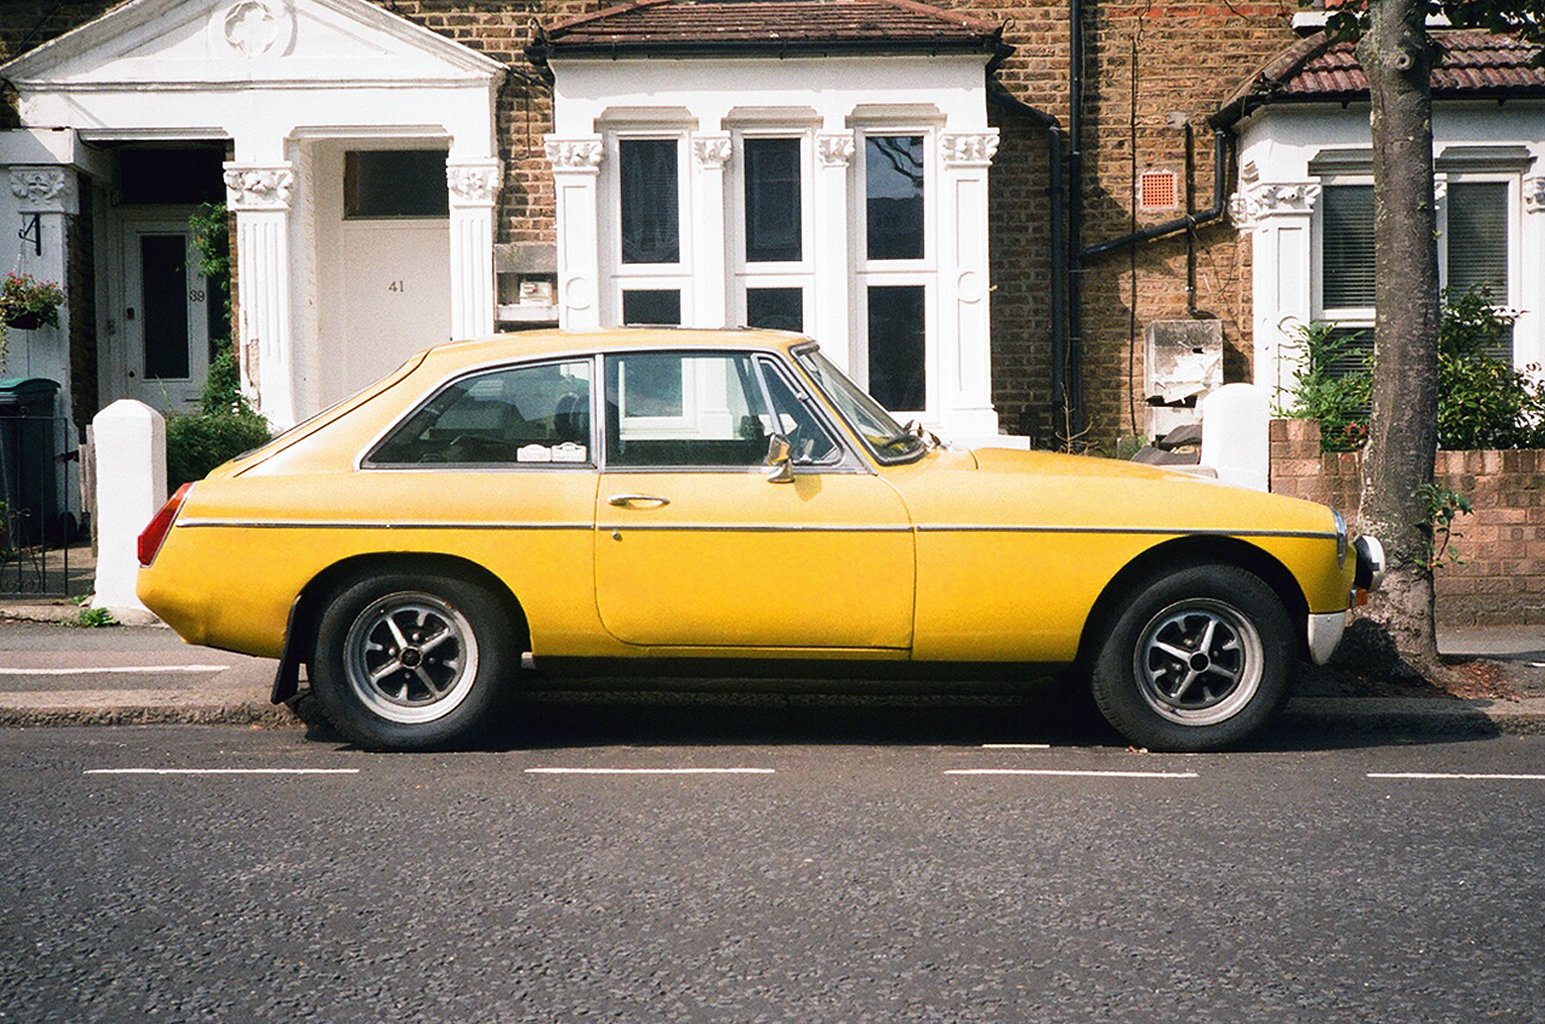  Yellow MG in London - UK 